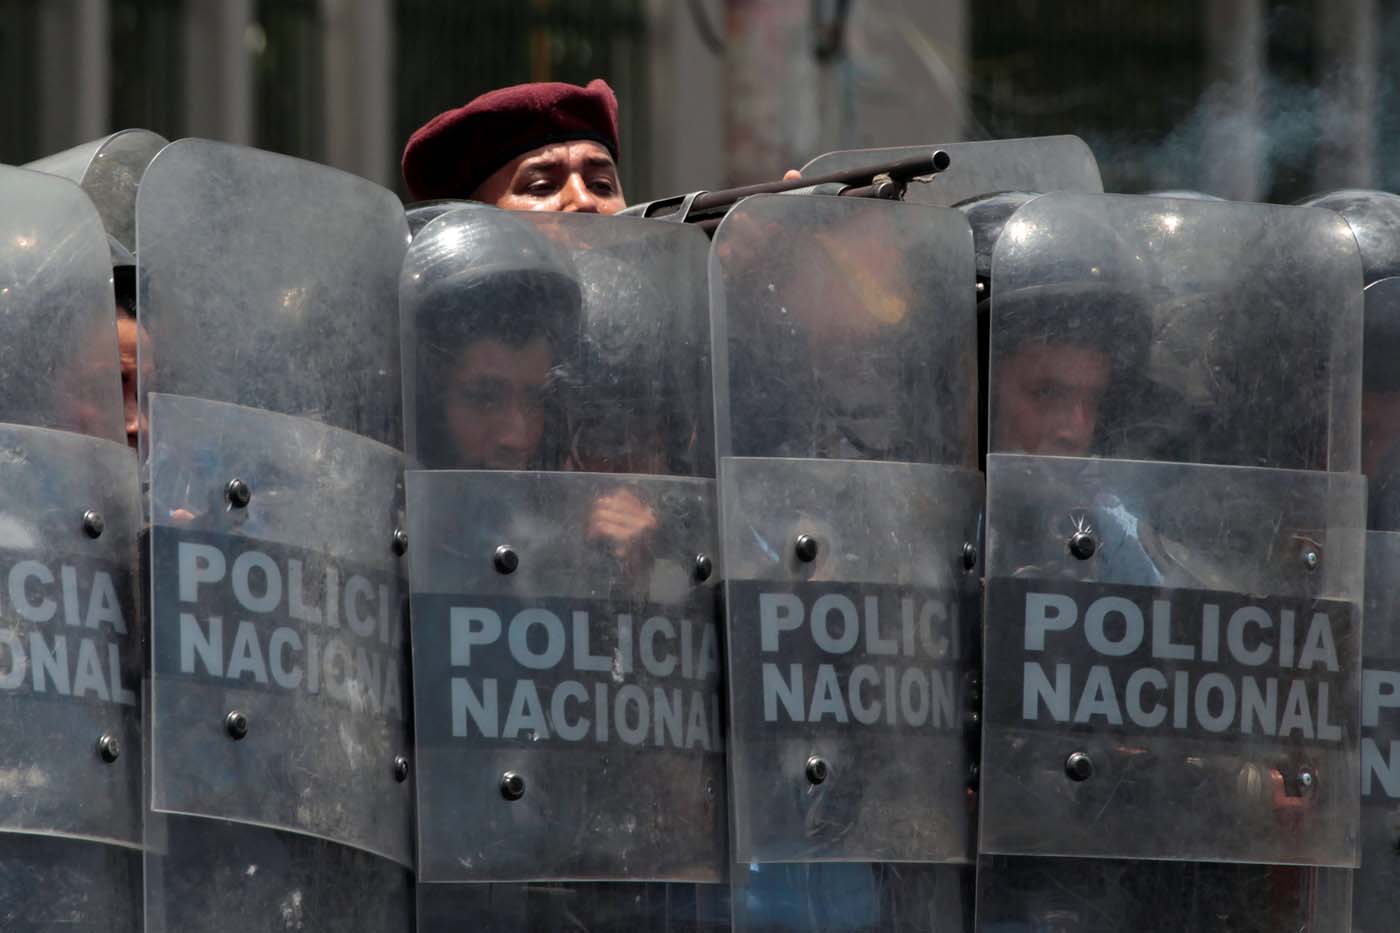 Gobierno de Nicaragua quiere parar protestas con balas, dice líder campesina